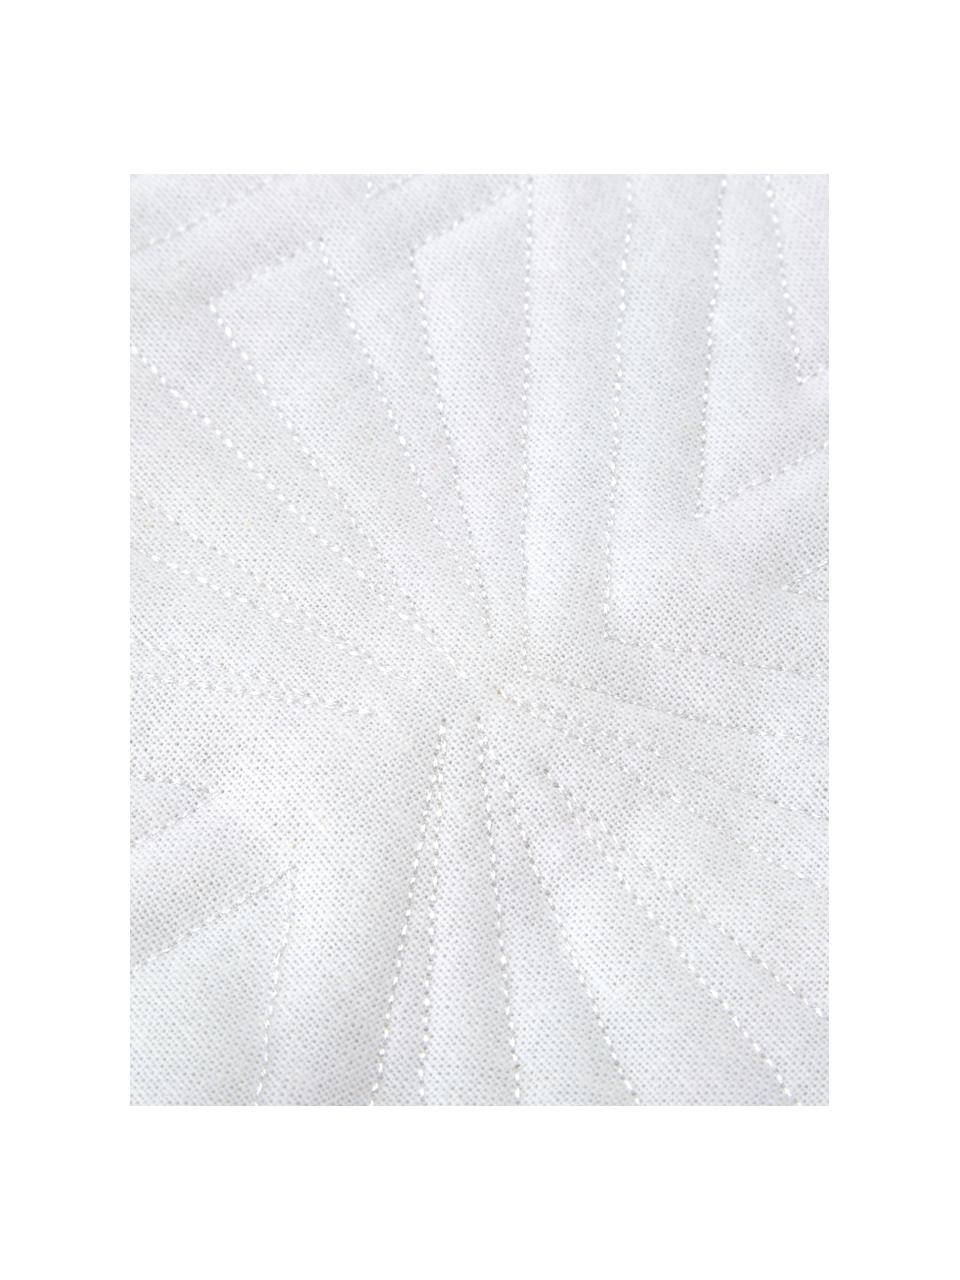 Fein gemustertes Kissen Bauhaus mit Fransenabschluss, mit Inlett, 100% Baumwolle, Weiß, 55 x 55 cm